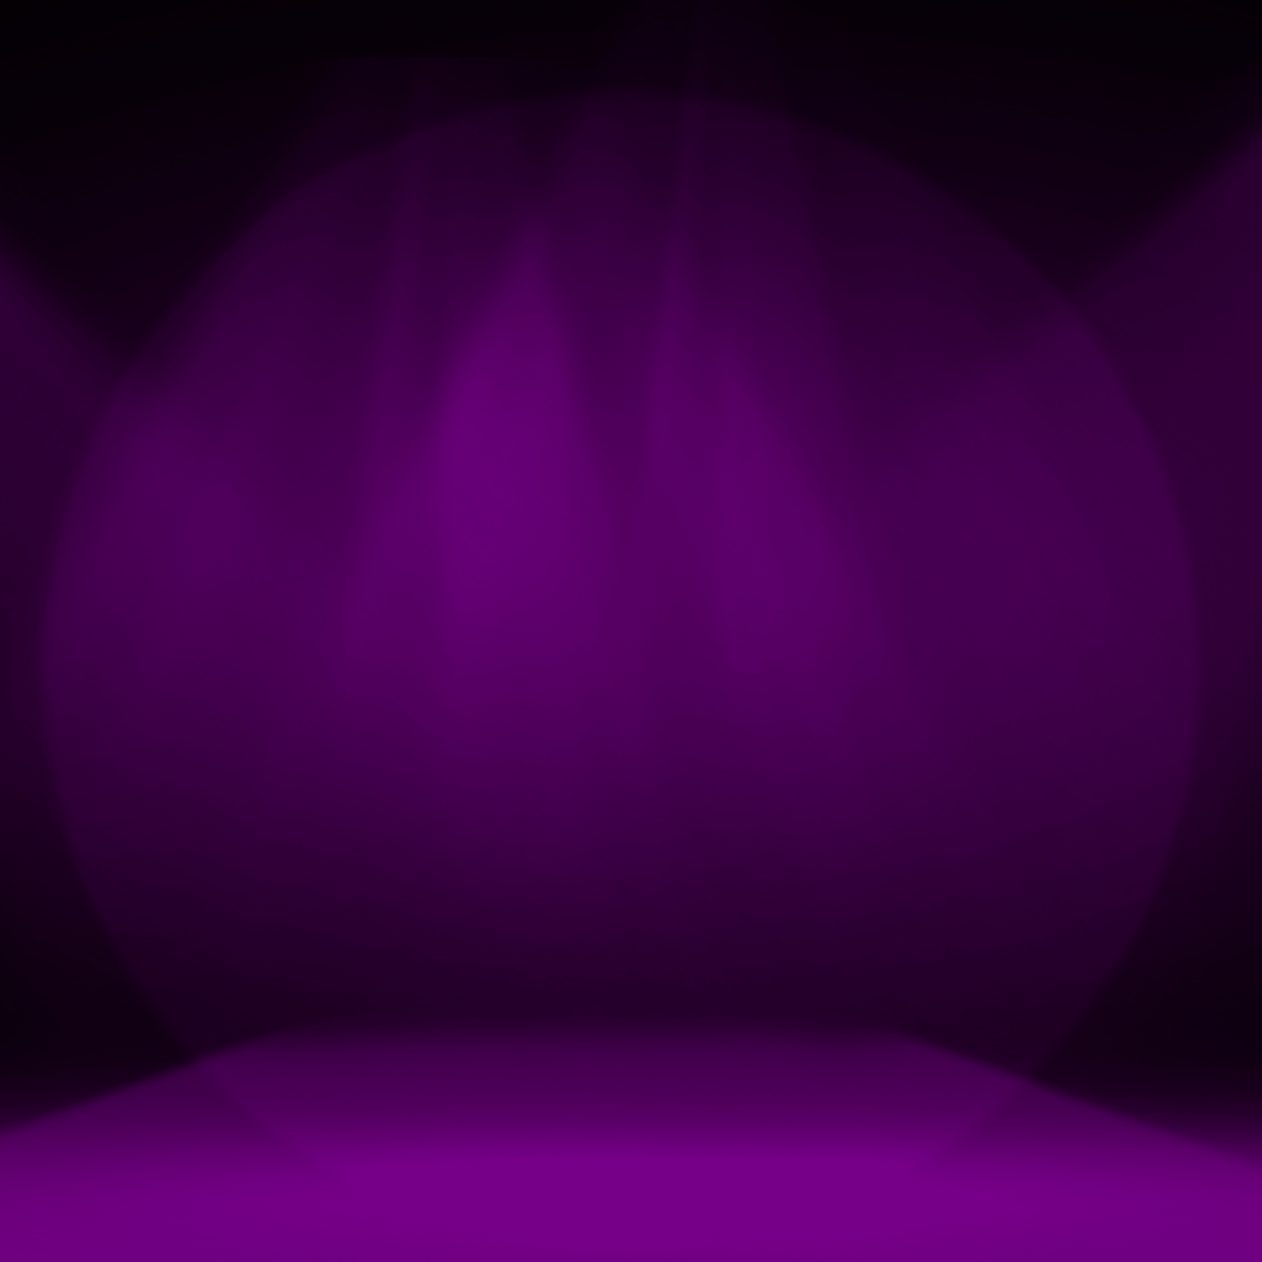 1262x1262 Parallax wallpaper 4k Purple Stage Decoration iPad Wallpaper 1262x1262 pixels resolution